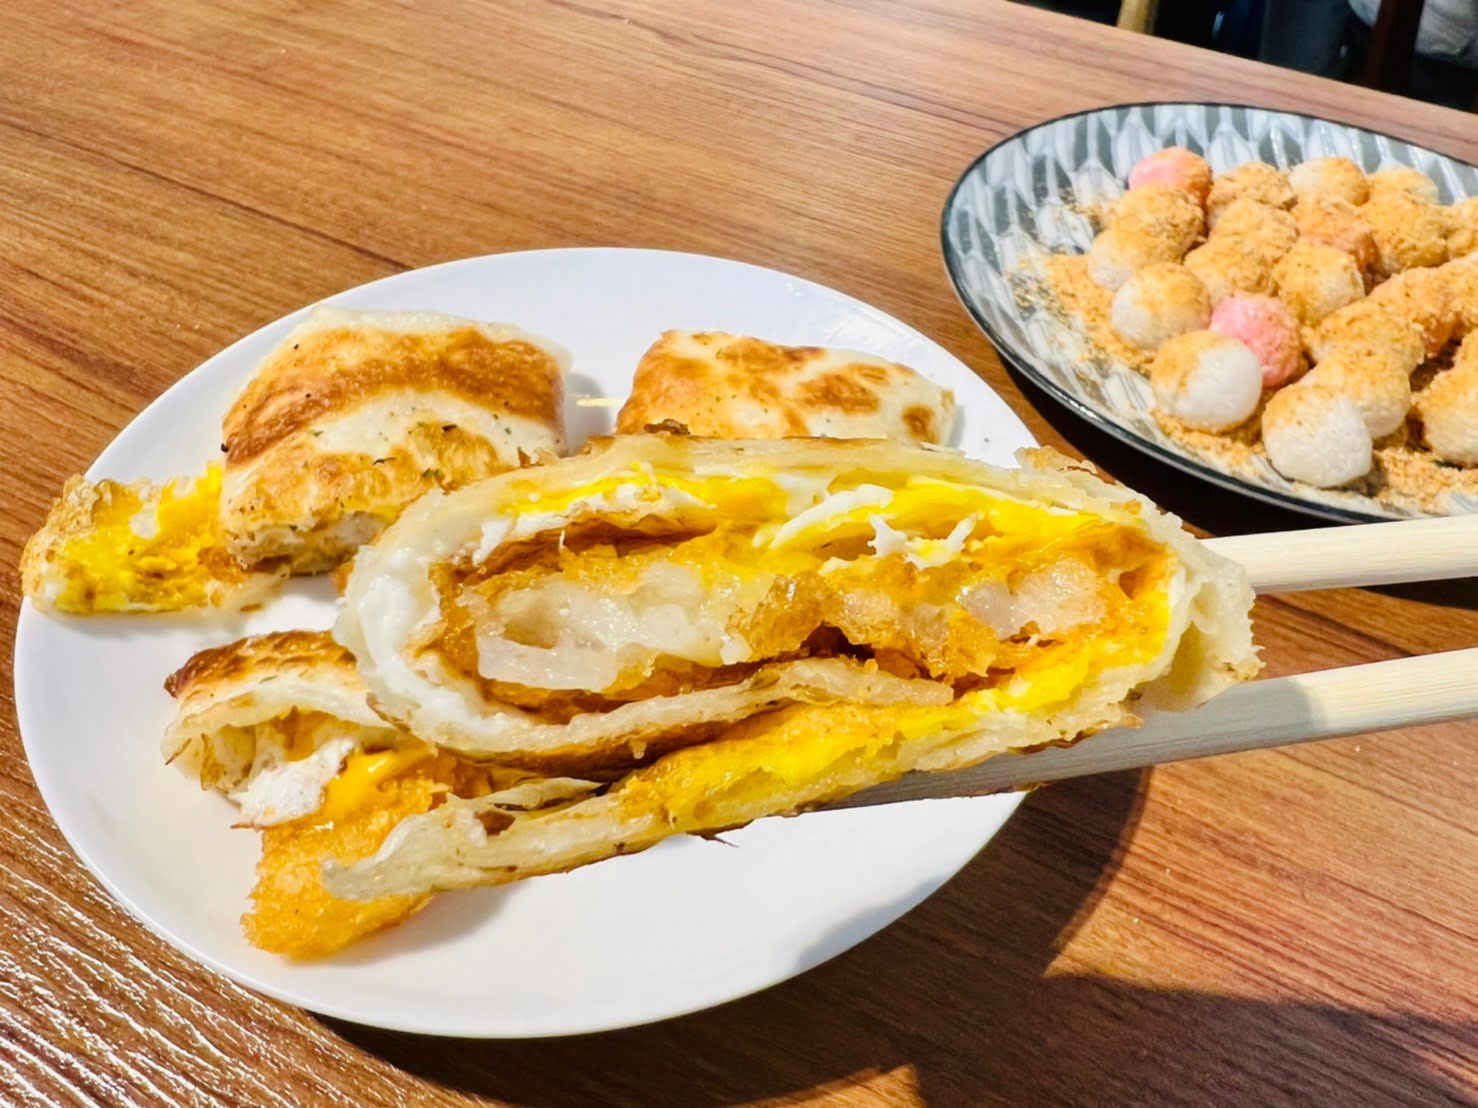 桃園美食推薦 來吃早餐 林口龜山早午餐 排隊美食 蛋餅, 炒麵, 炸湯圓